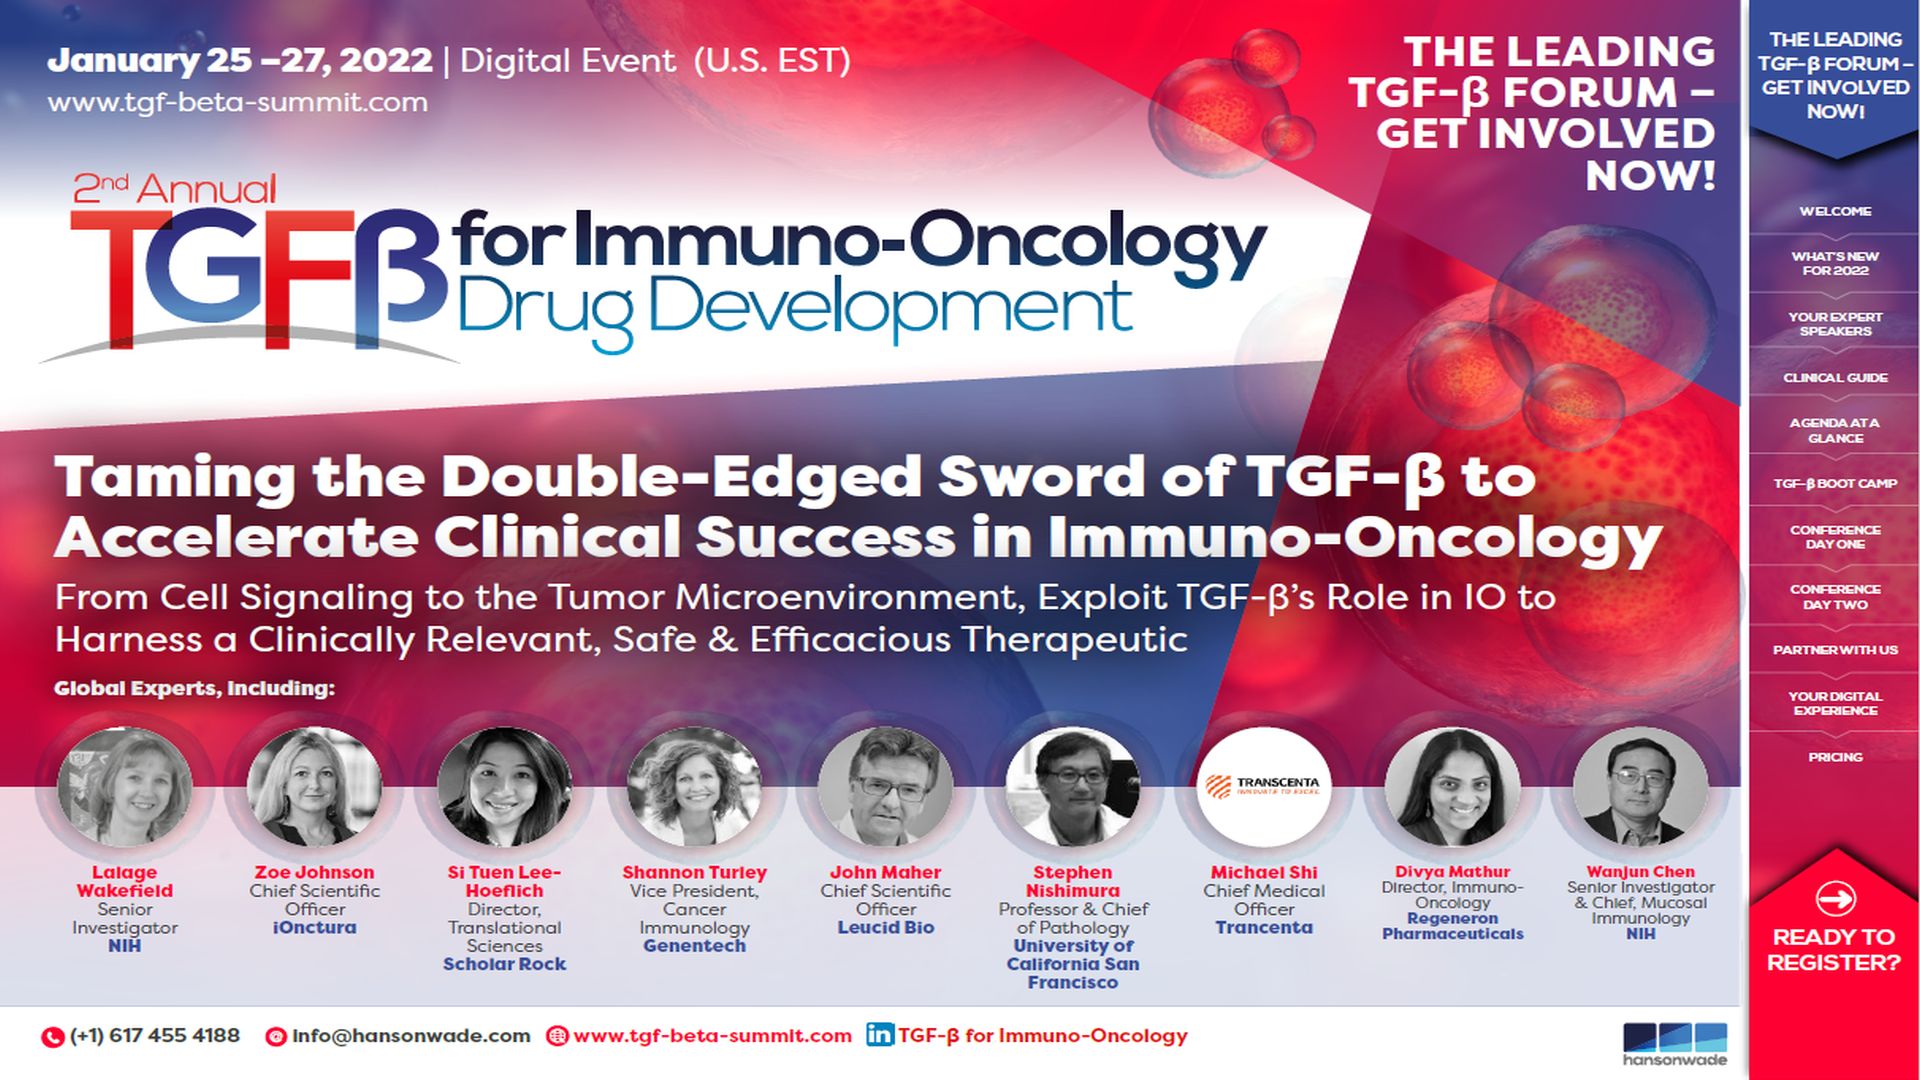 2nd TGF-β for Immuno-Oncology Drug Development Summit